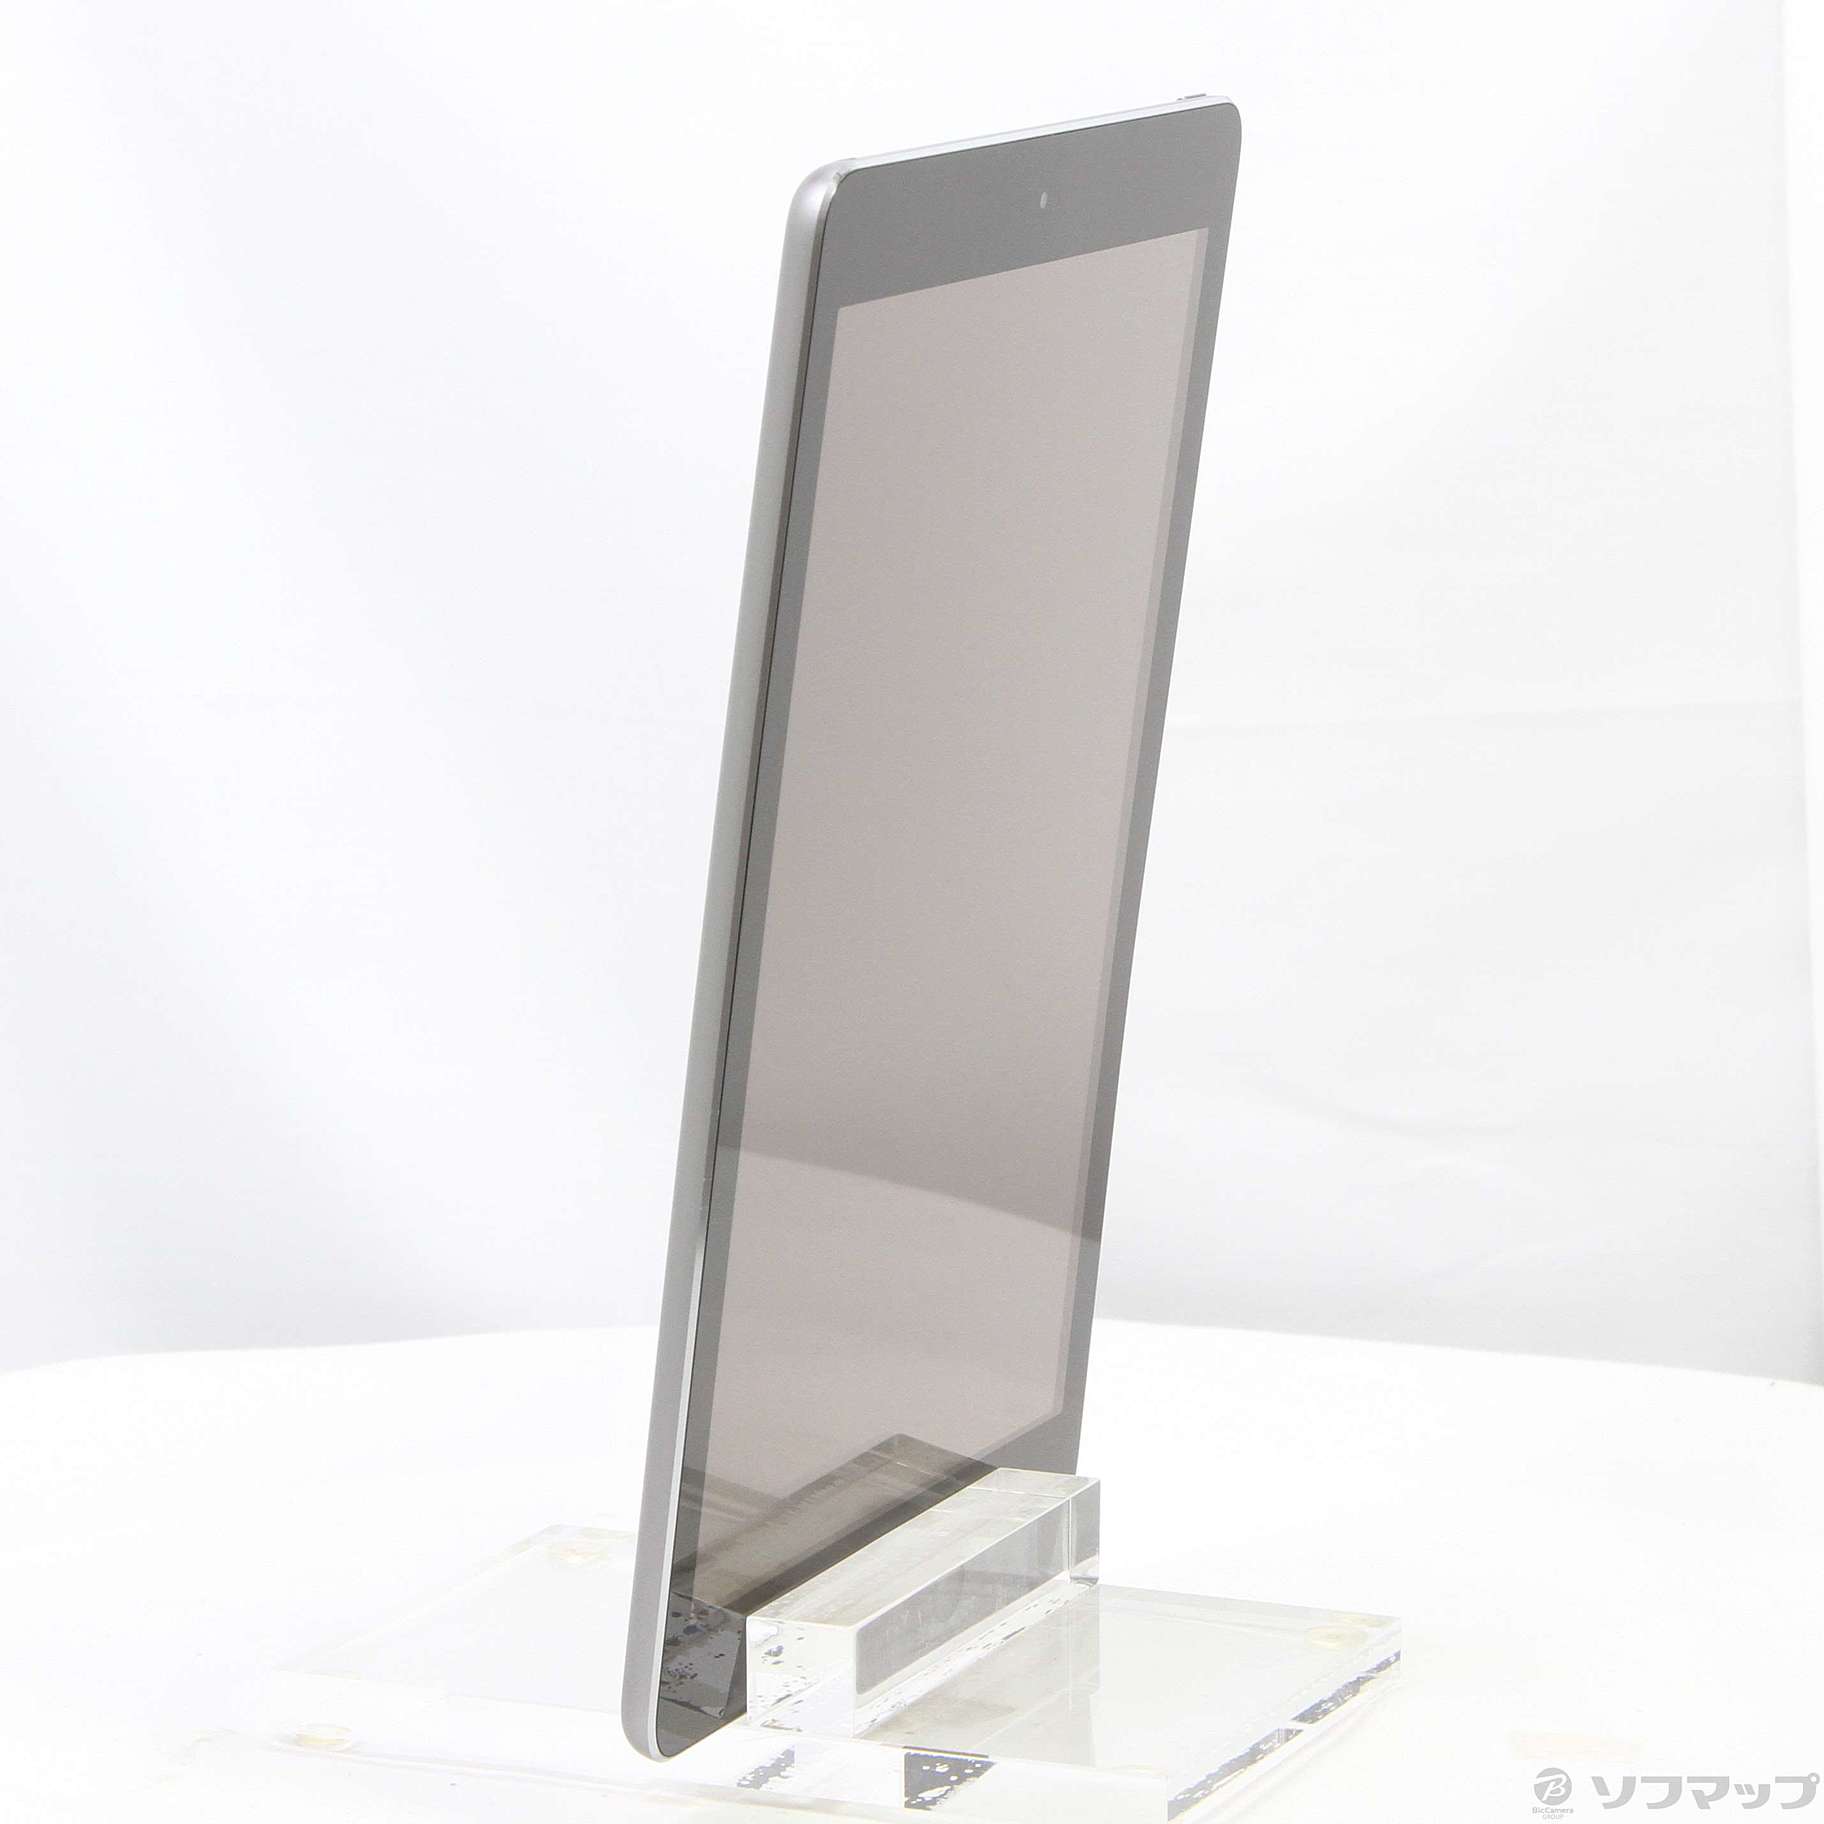 【値下】iPad Air Wi-fi 16GB space gray 液晶線